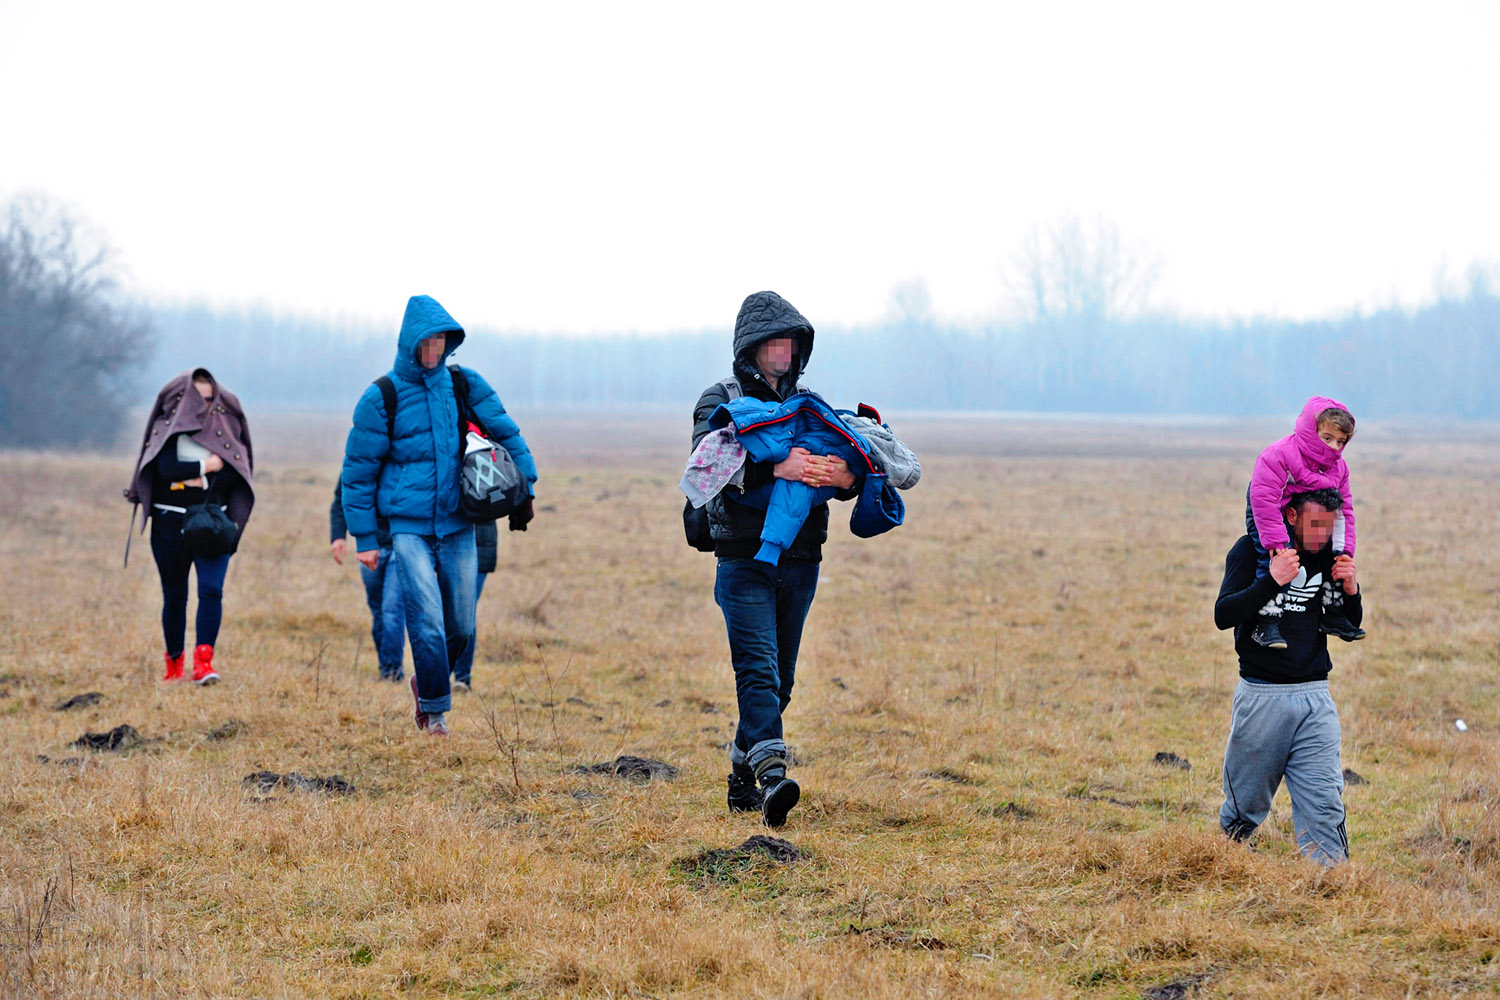 Koszovói határsértők Ásotthalomnál. A gyerekek miatt vállalják a kalandot